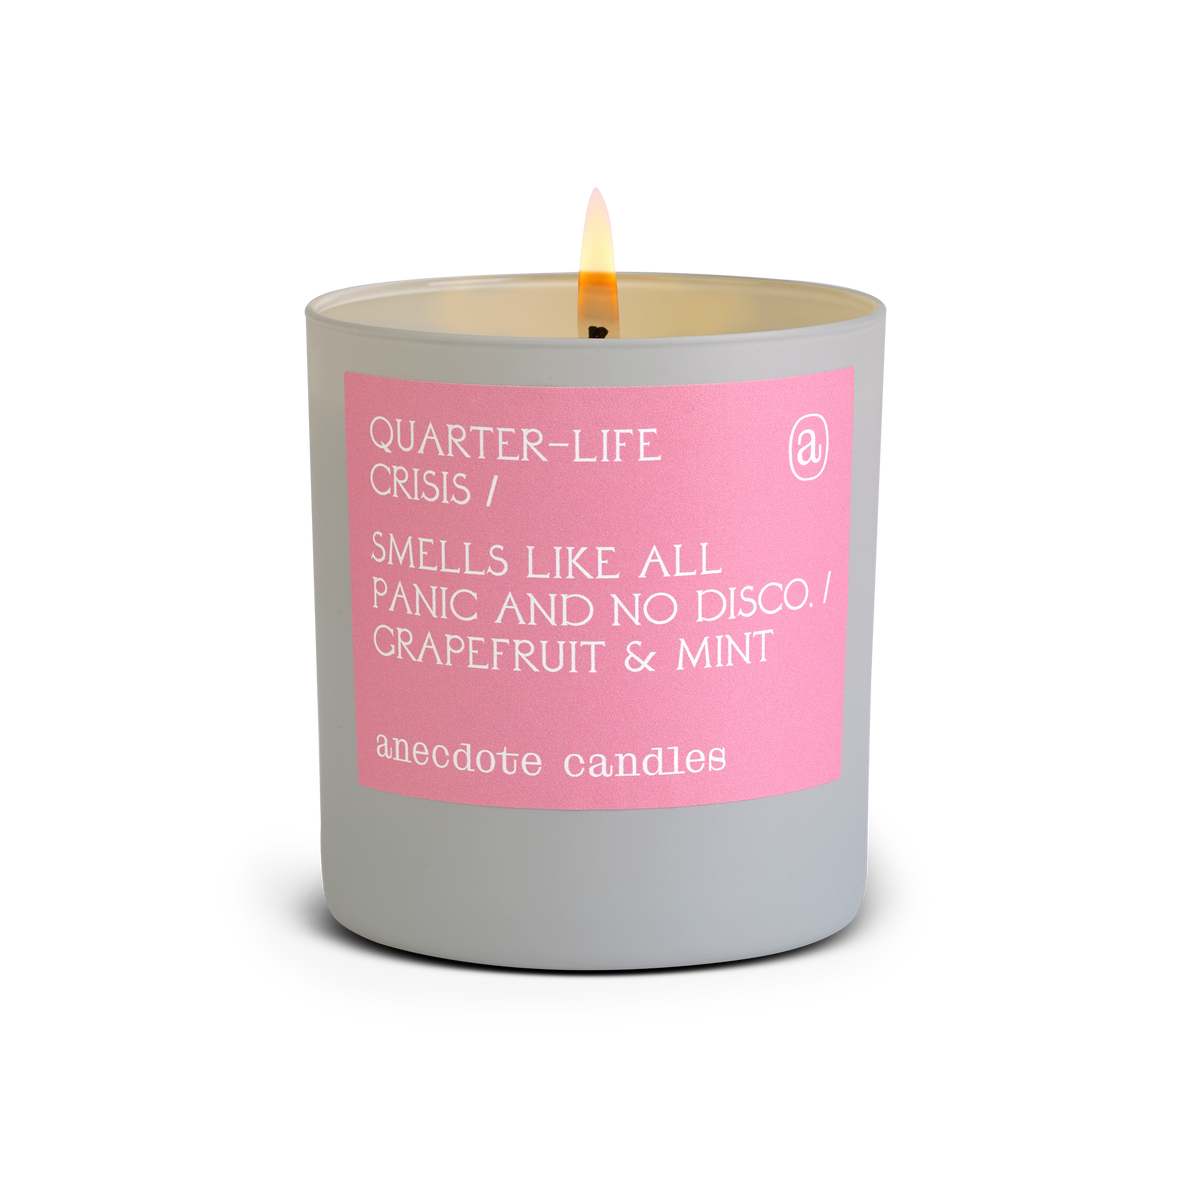 Quarter-life Crisis - Anecdote Candles